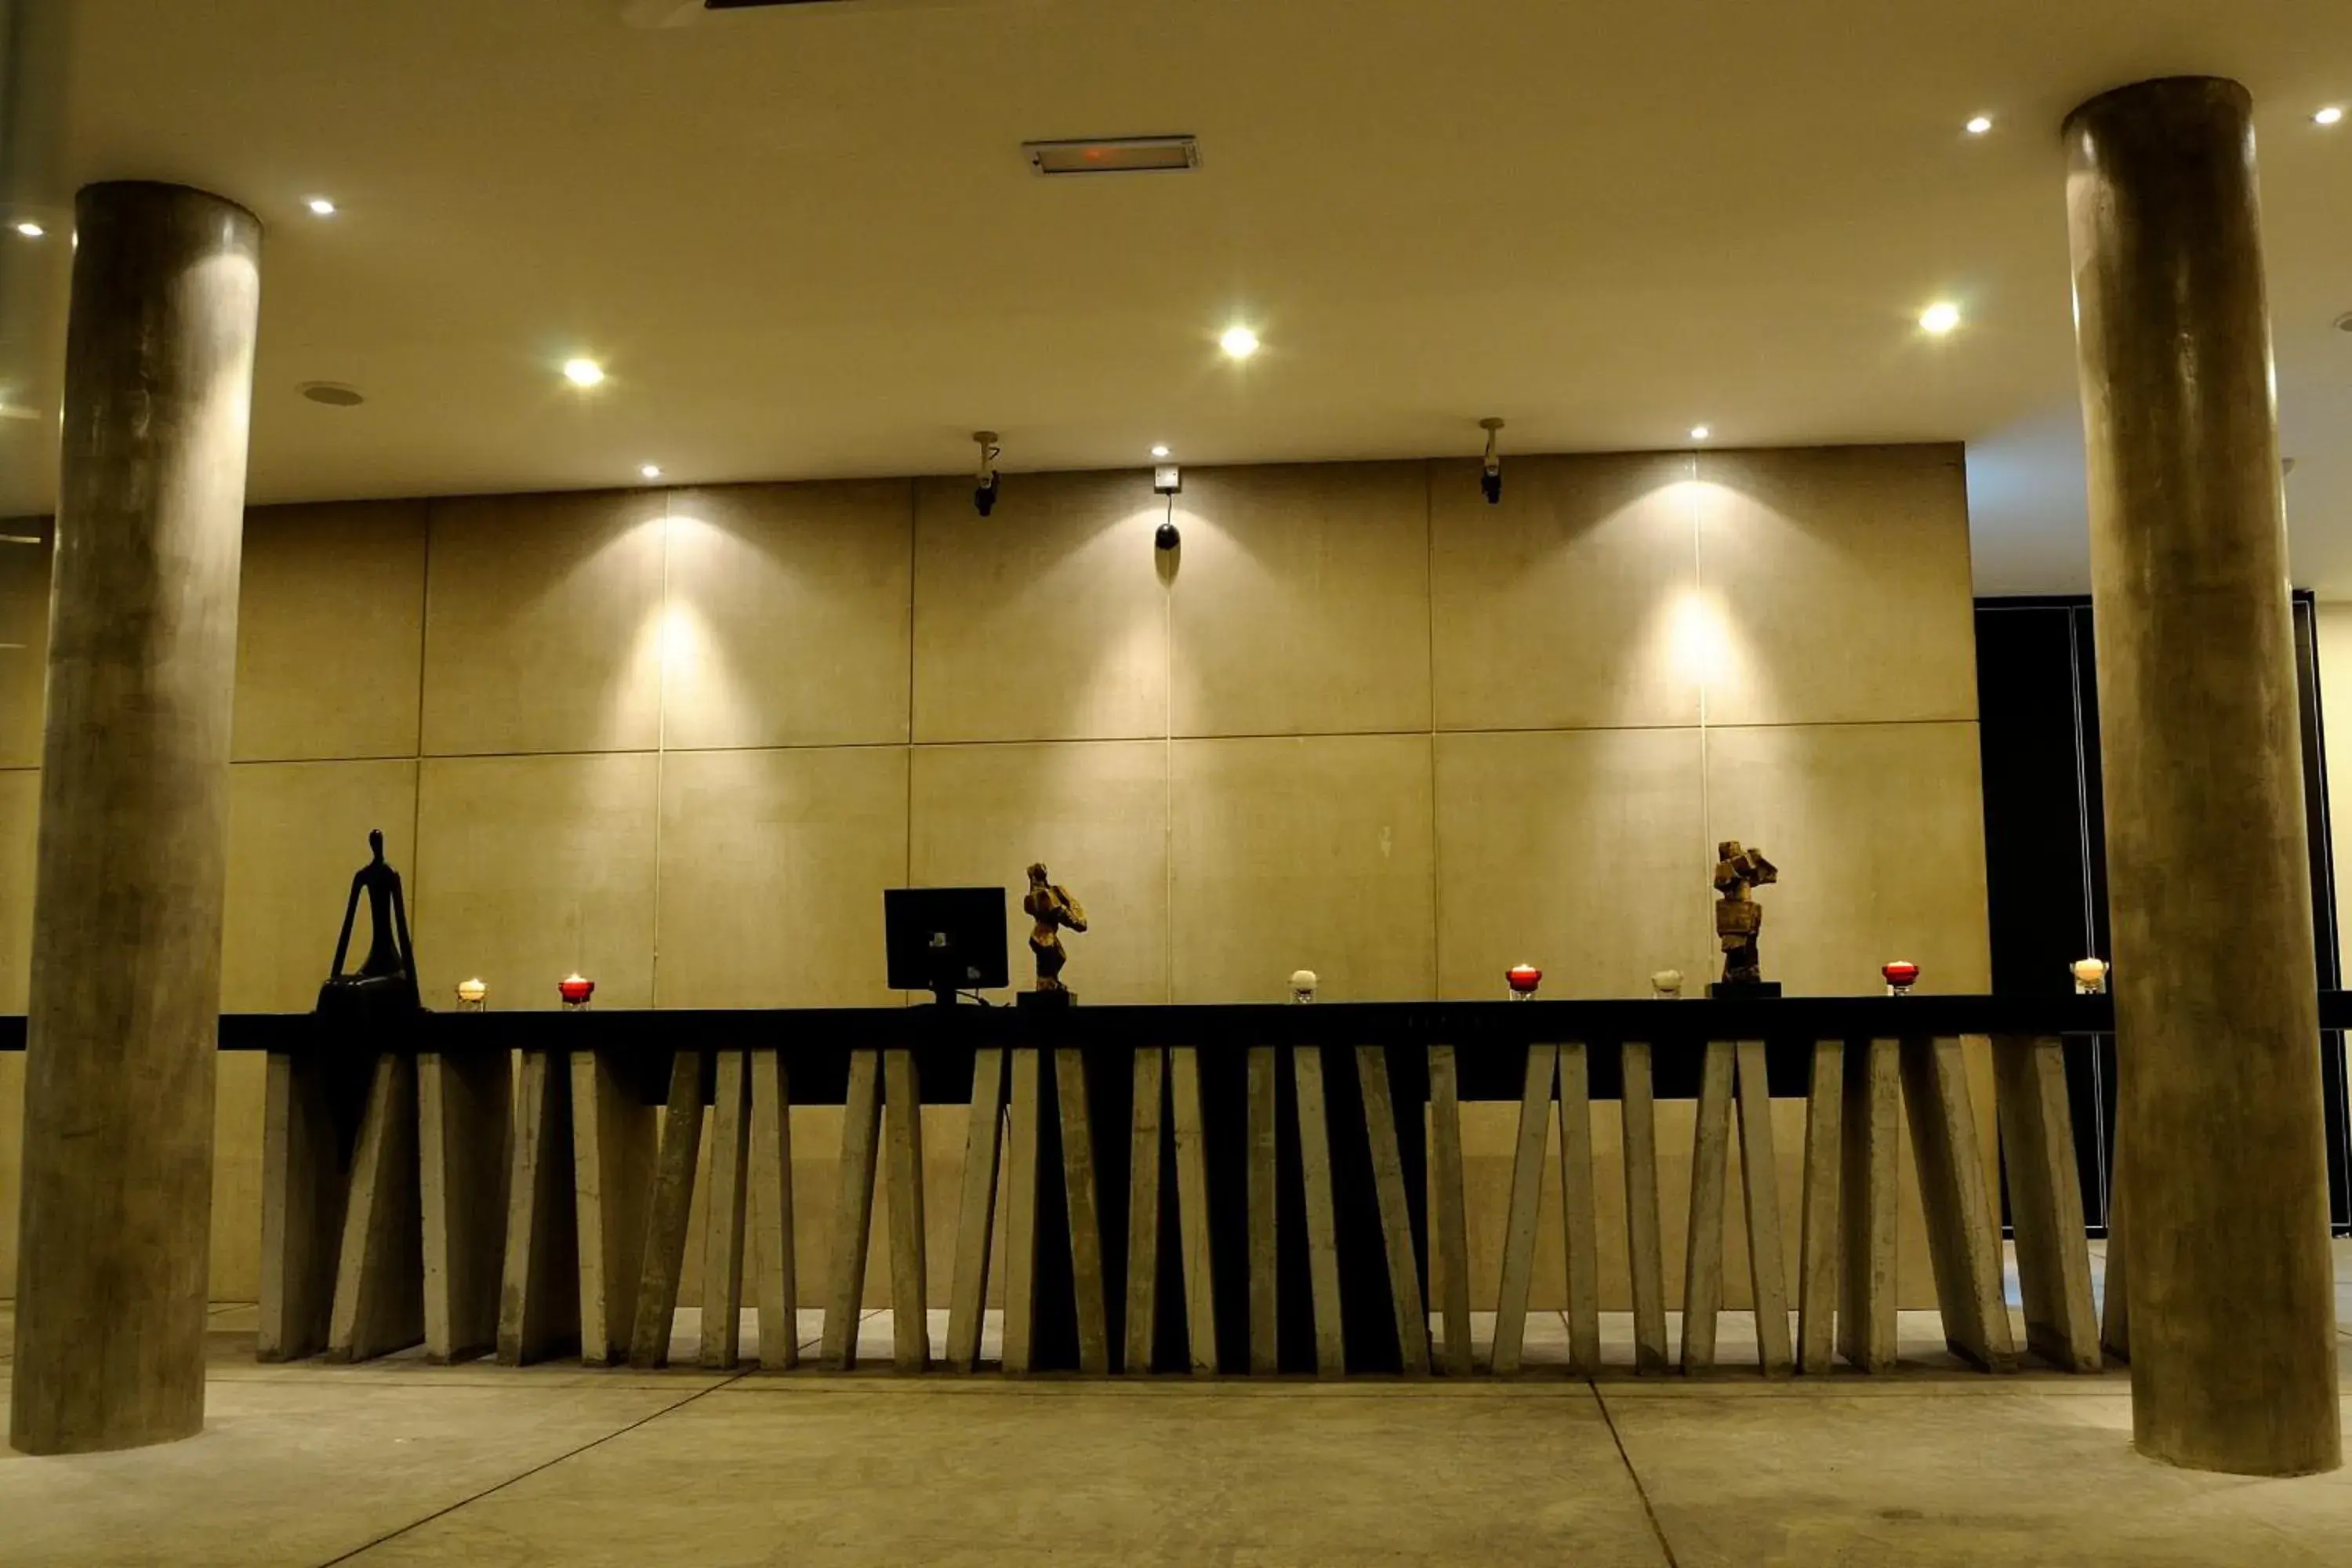 Lobby or reception in T+ Hotel @ Alor Setar